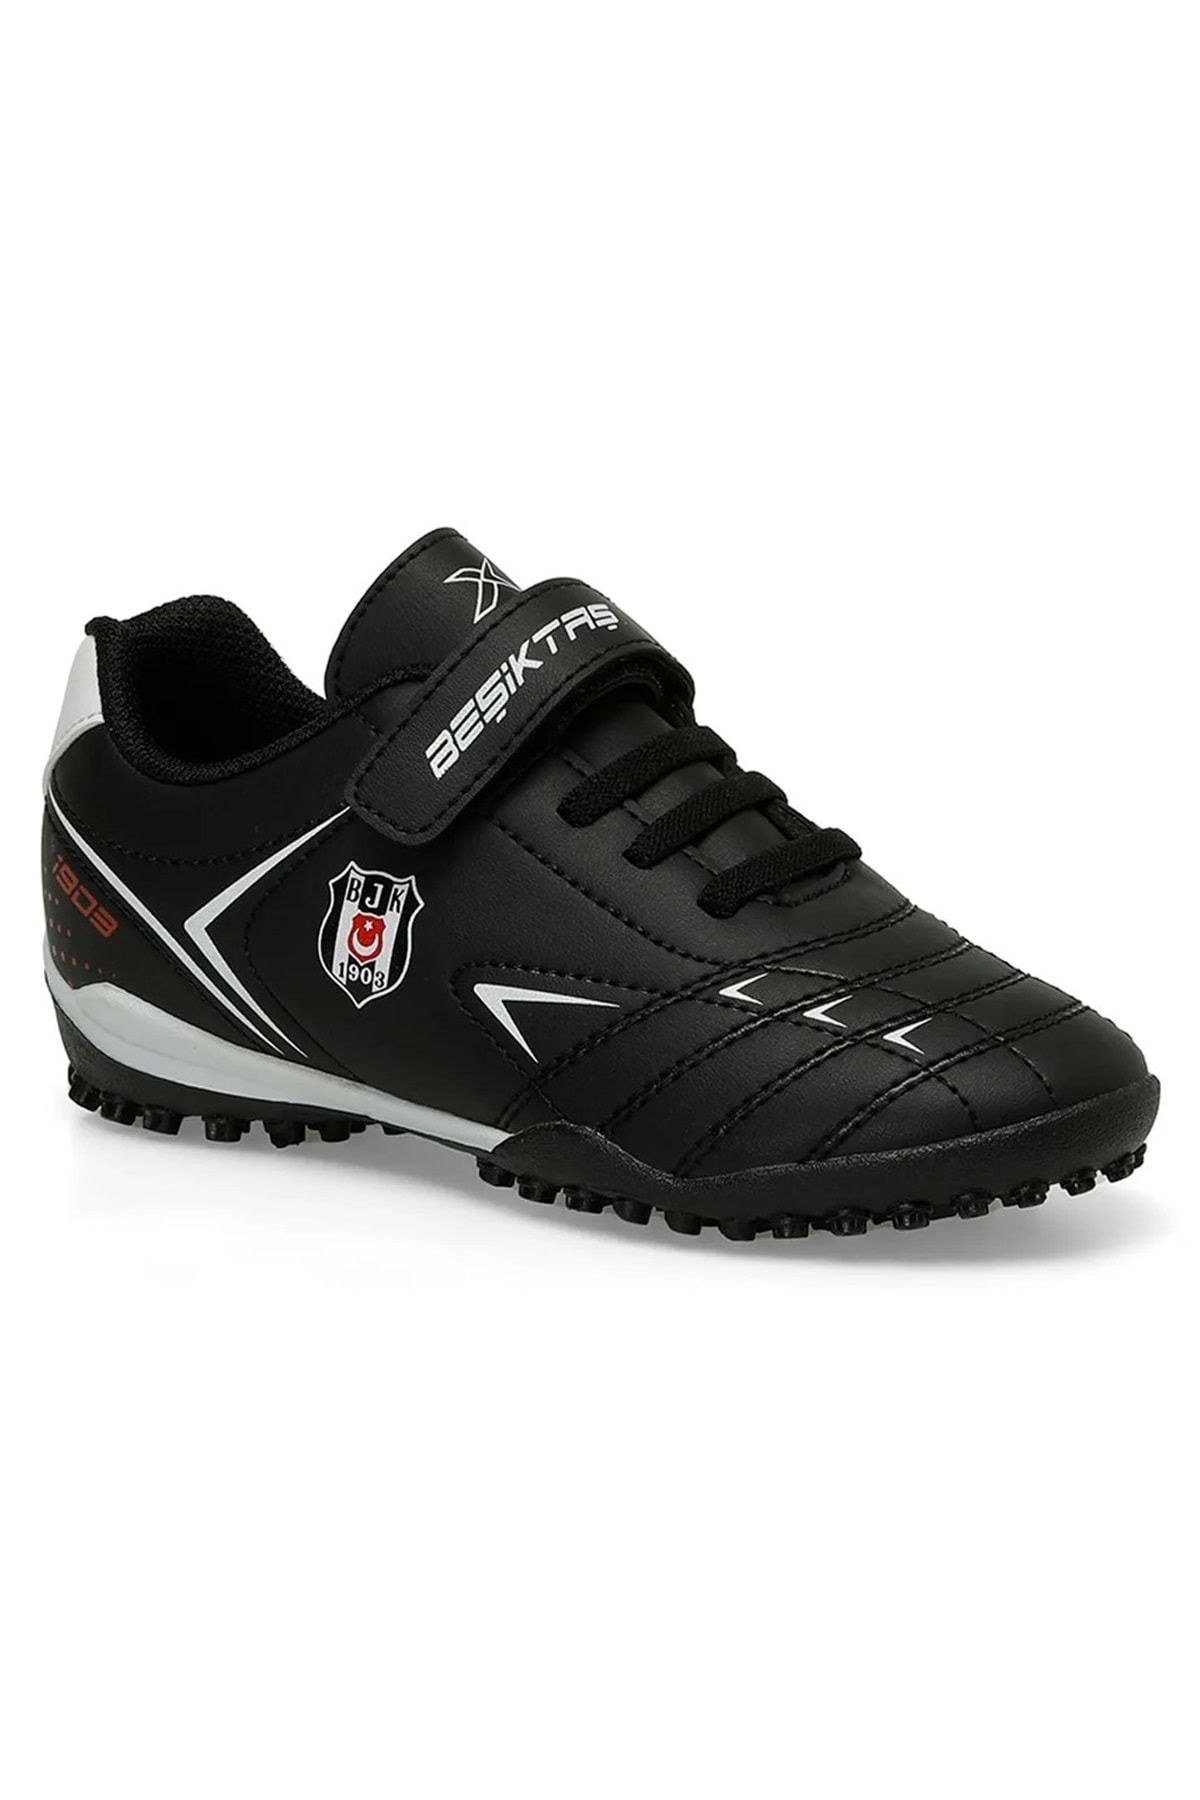 Beşiktaş Kinetix Kero J Bjk Tf Çocuk Halısaha Ayakkabısı Siyah-beyaz